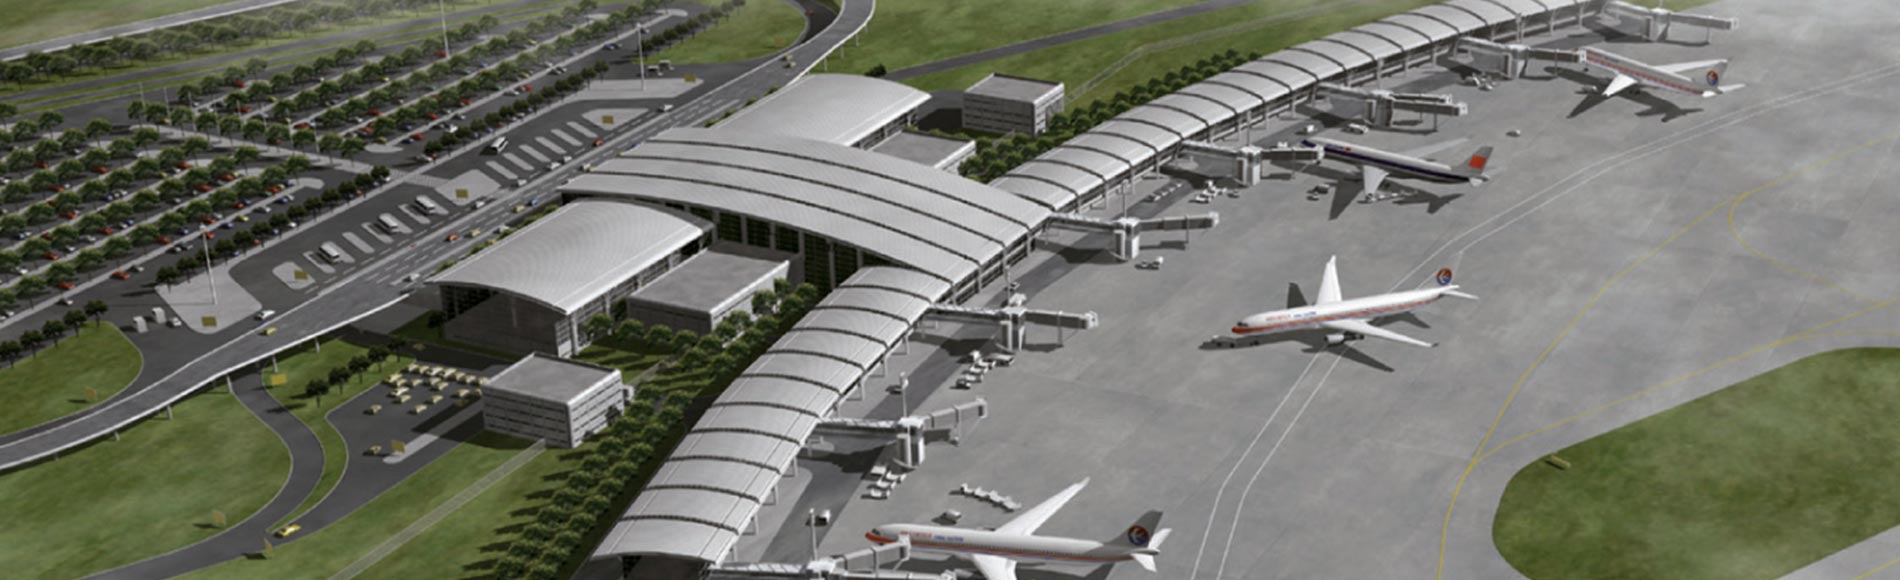 Bientôt un nouvel aéroport à la mesure des ambitions de la ZFN